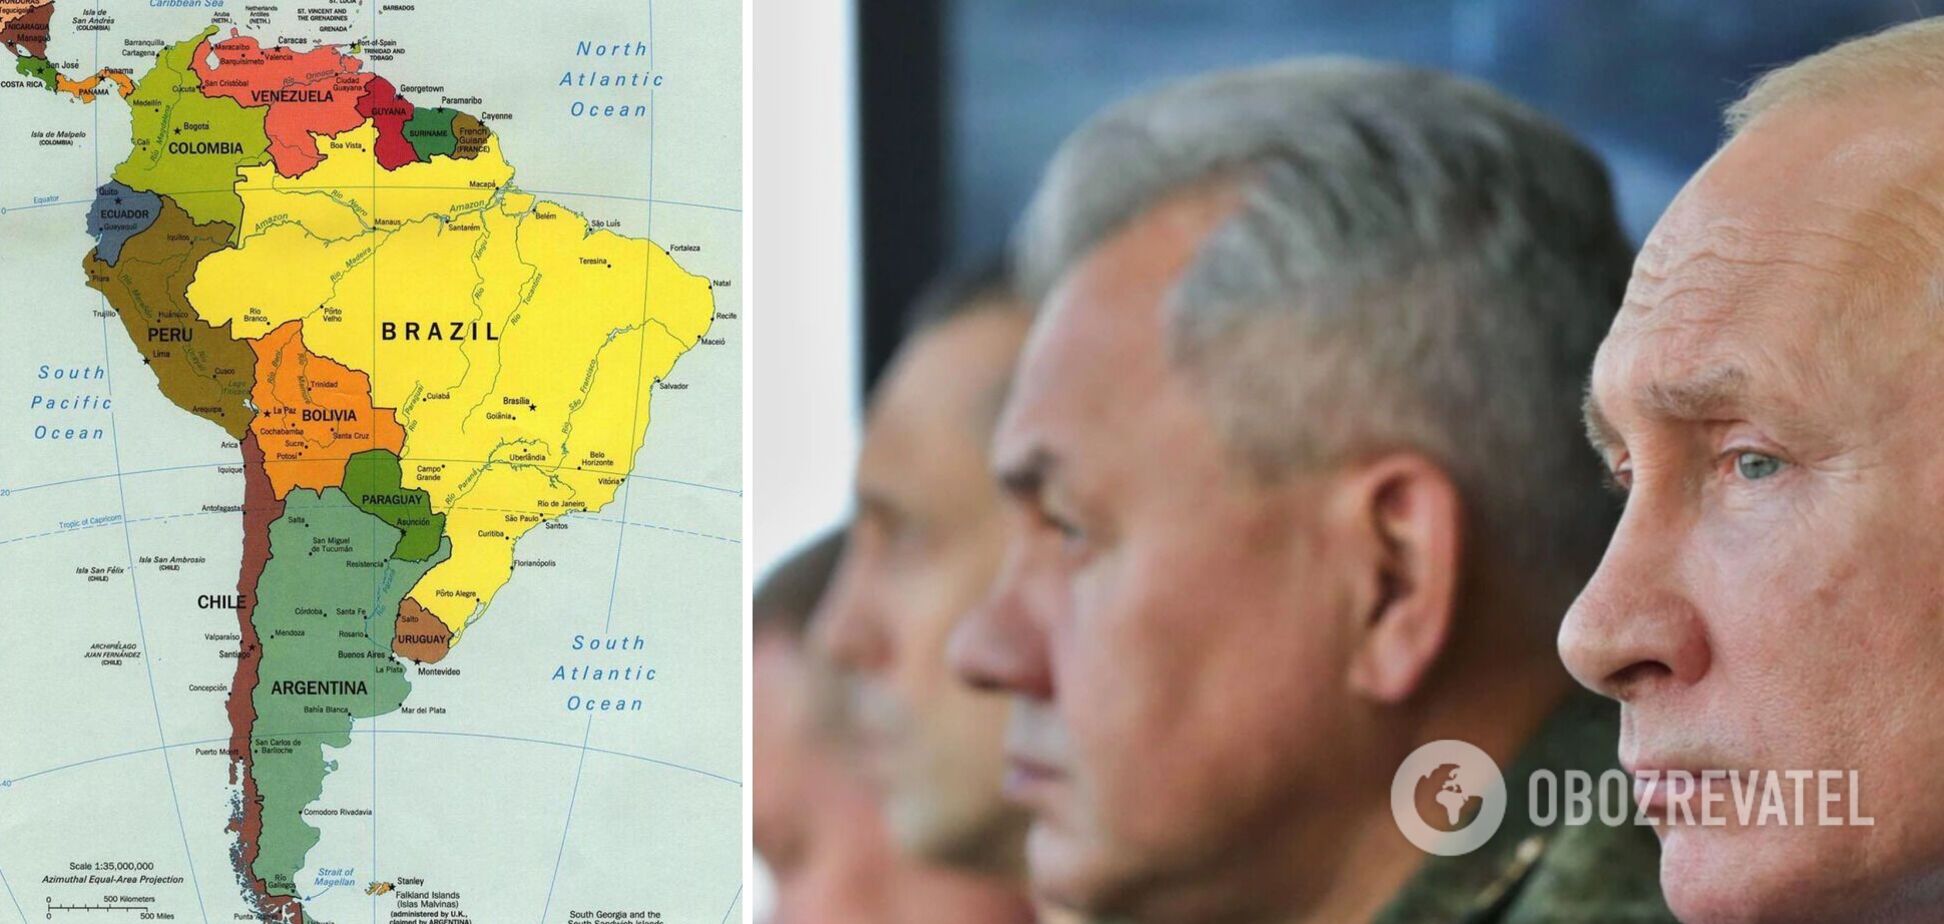 Оточення Путіна скуповує нерухомість в Південній Америці, готуючись до втечі після повалення режиму – росЗМІ 